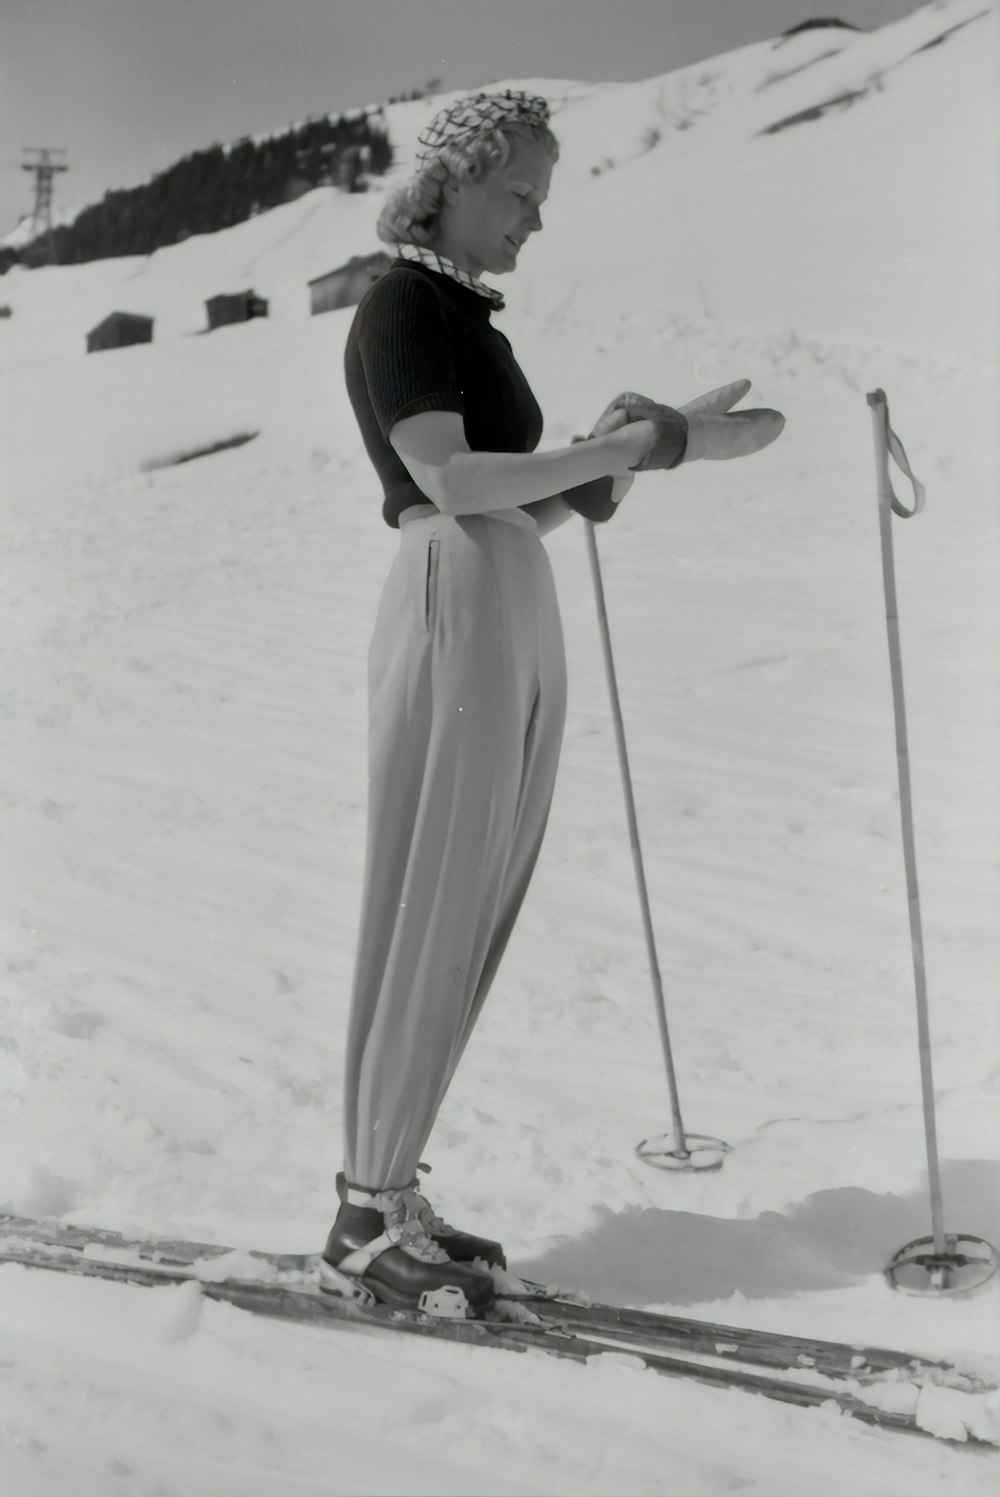 Fotografía en escala de grises de mujer usando snowboard